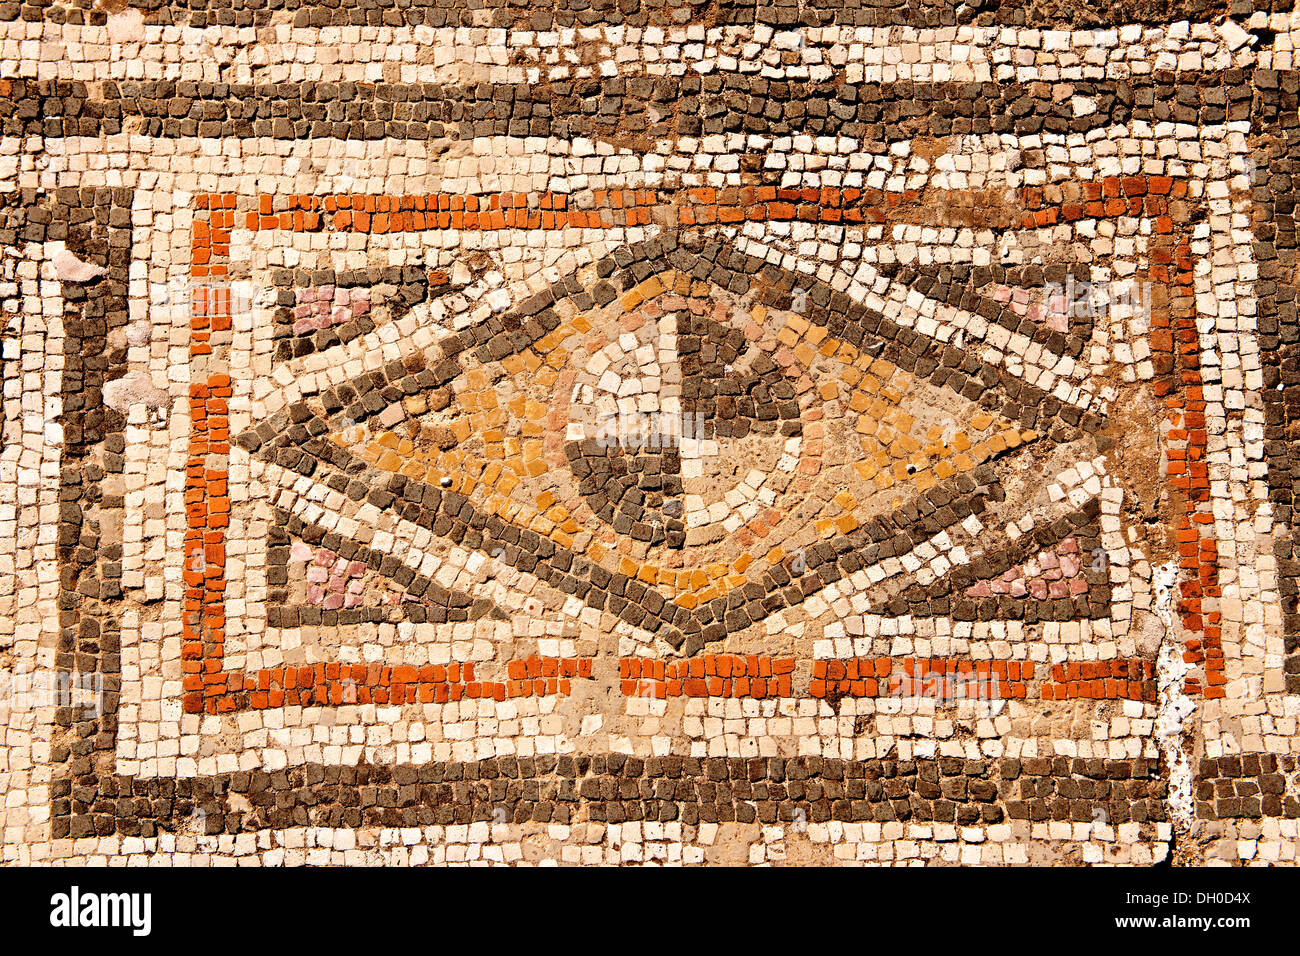 4e 100. Sol de mosaïques géométriques annonce la fin de la période romaine synagogue juive de Sardes site archéologique, Turquie Banque D'Images